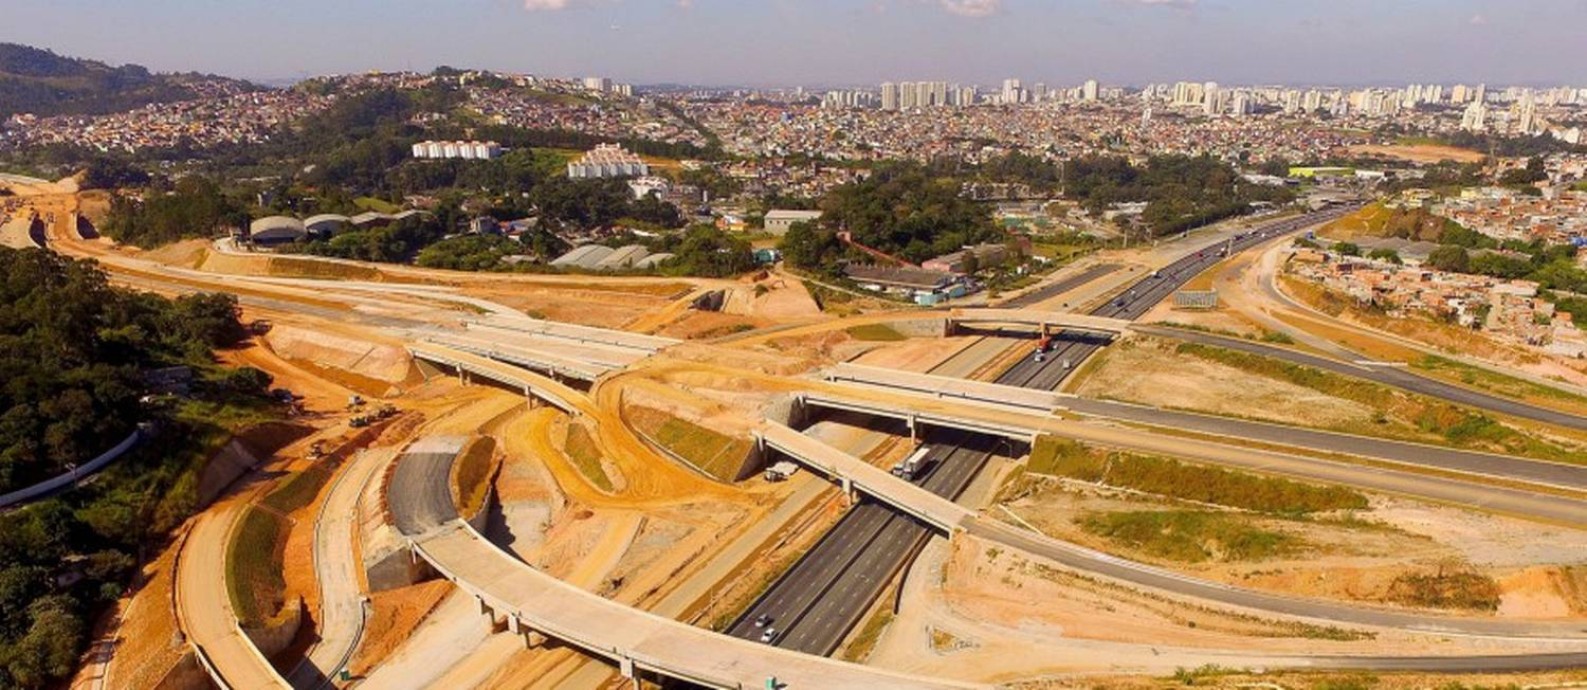 Vista aérea das obras do Rodoanel Norte, às margens da rodovia Fernão Dias (BR-381), na altura do km 92, em Guarulhos, em 2018. Foto: WPP / Agência O Globo / Agência O Globo